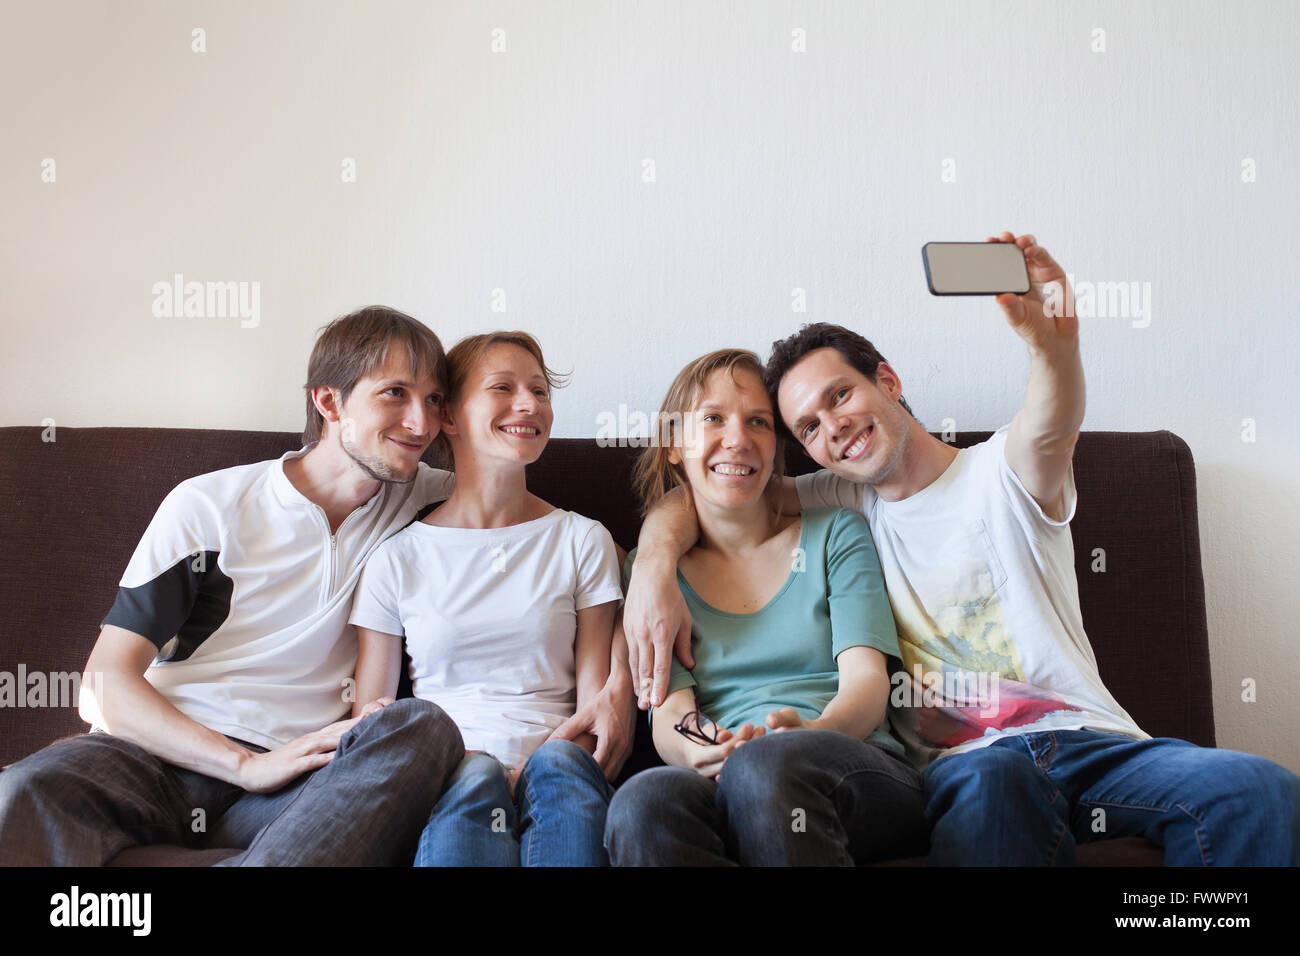 Gruppe von Freunden, Fotos von sich selbst, nach Hause zu nehmen, Party, selfy Stockfoto